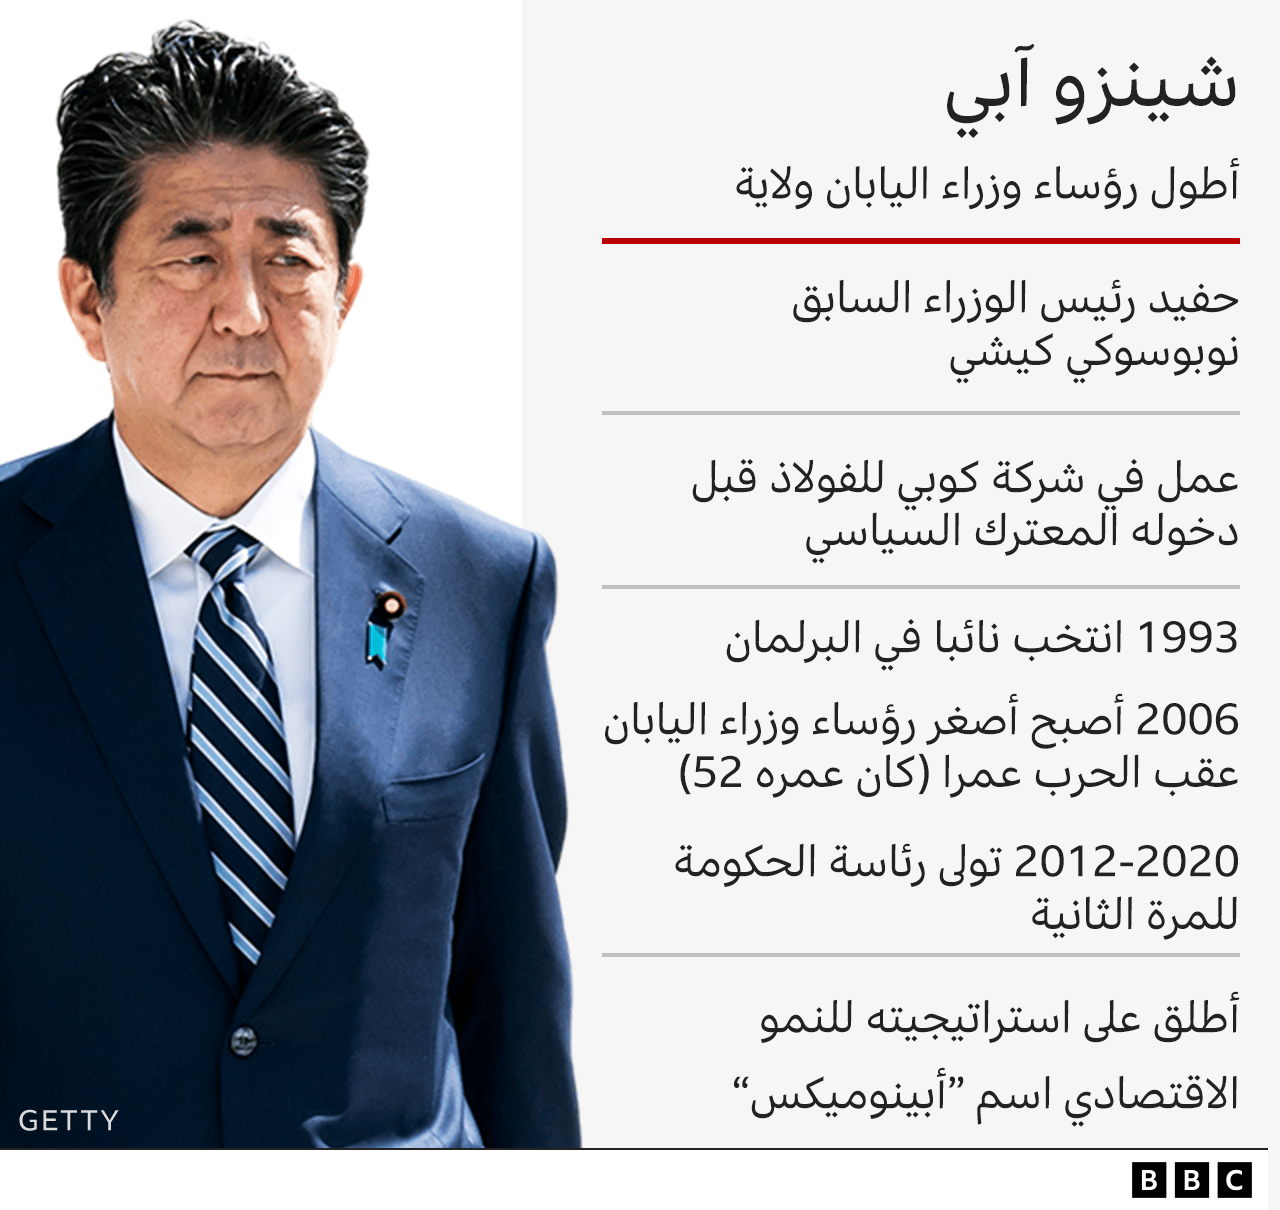 رئيس الوزراء الياباني   شينزو آبي _125859544_shinzo_abe_datapic_640-2x-nc